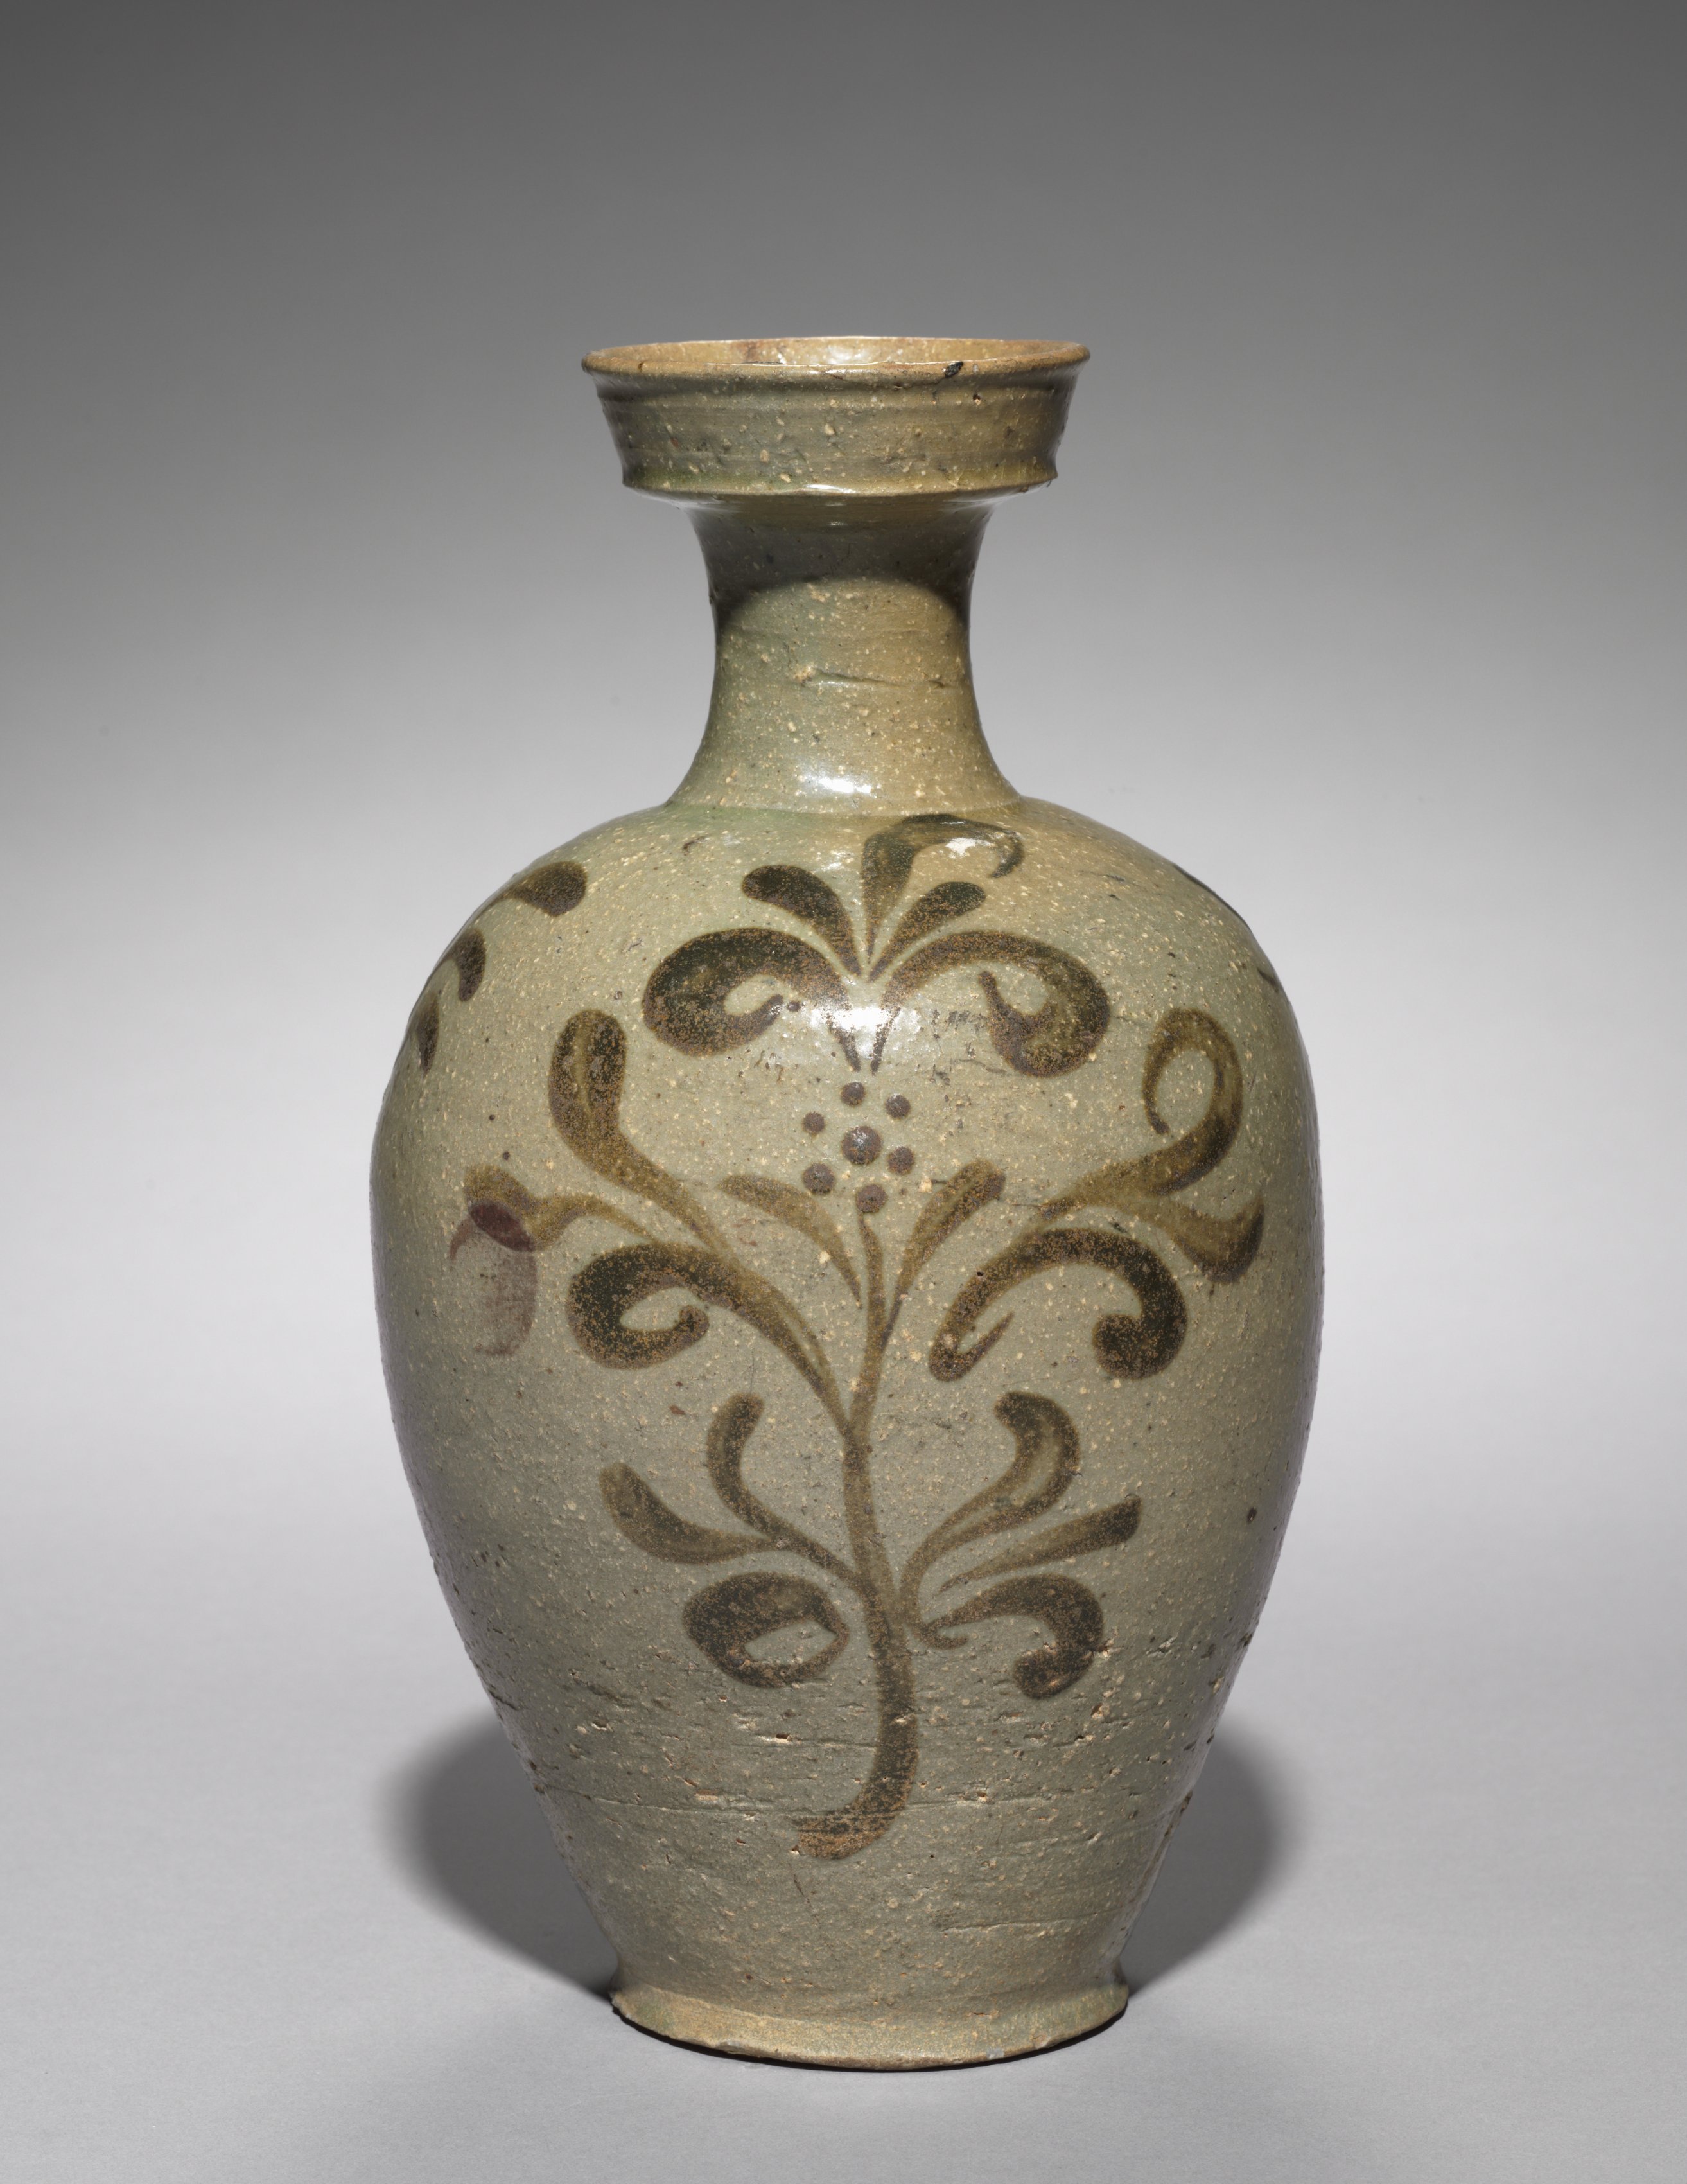 Vase with Floral Design